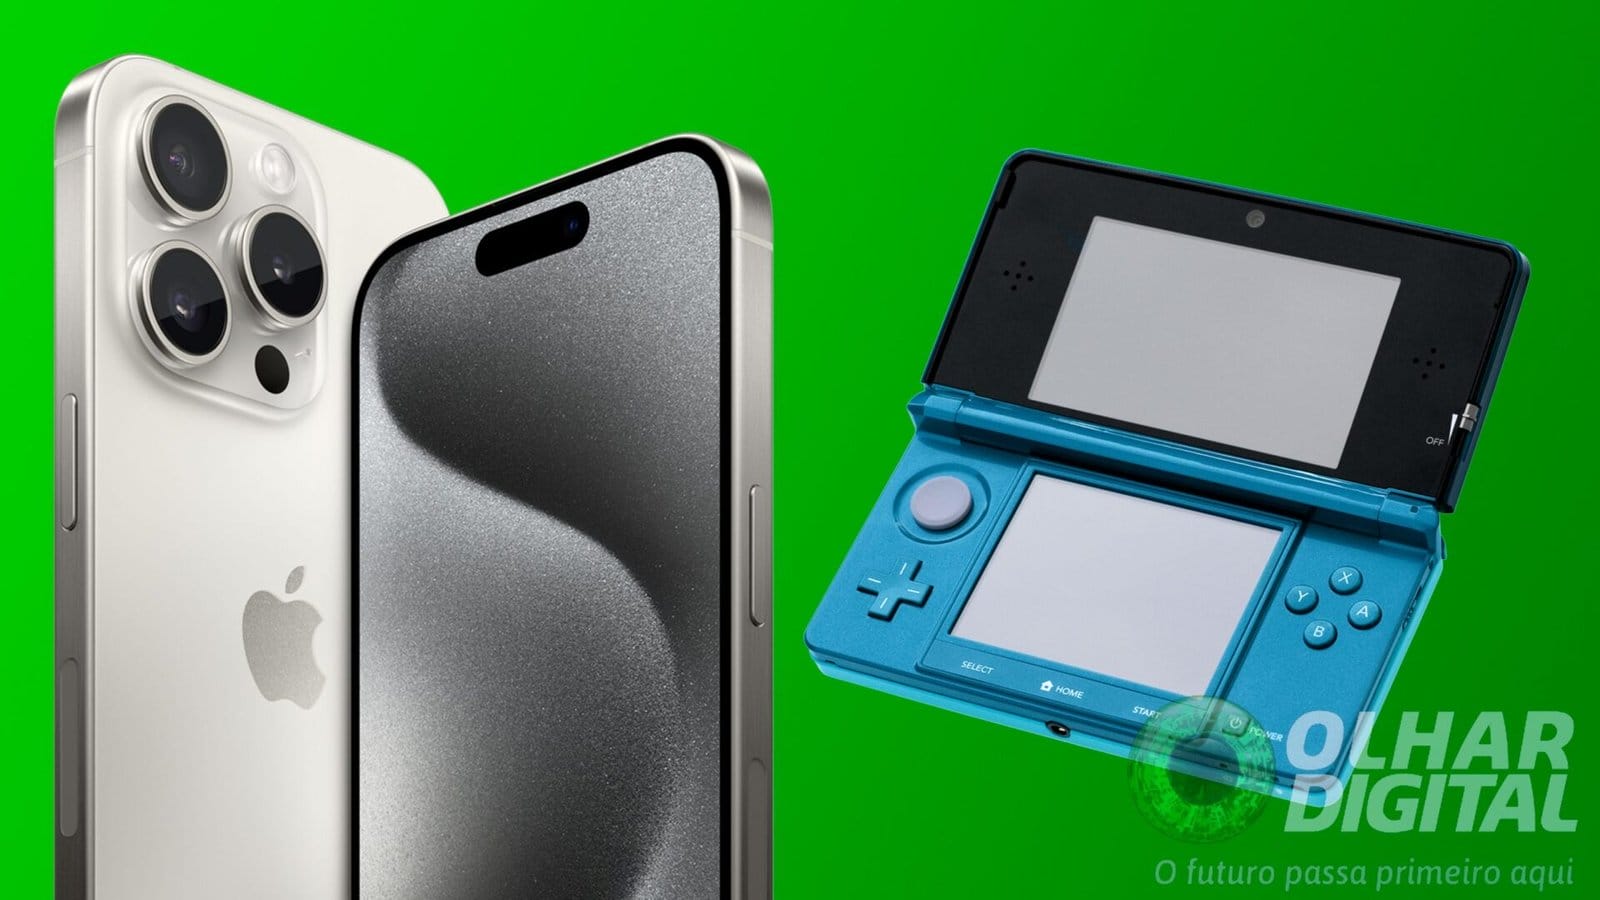 Dá para jogar Nintendo 3DS no iPhone (com alguns poréns)